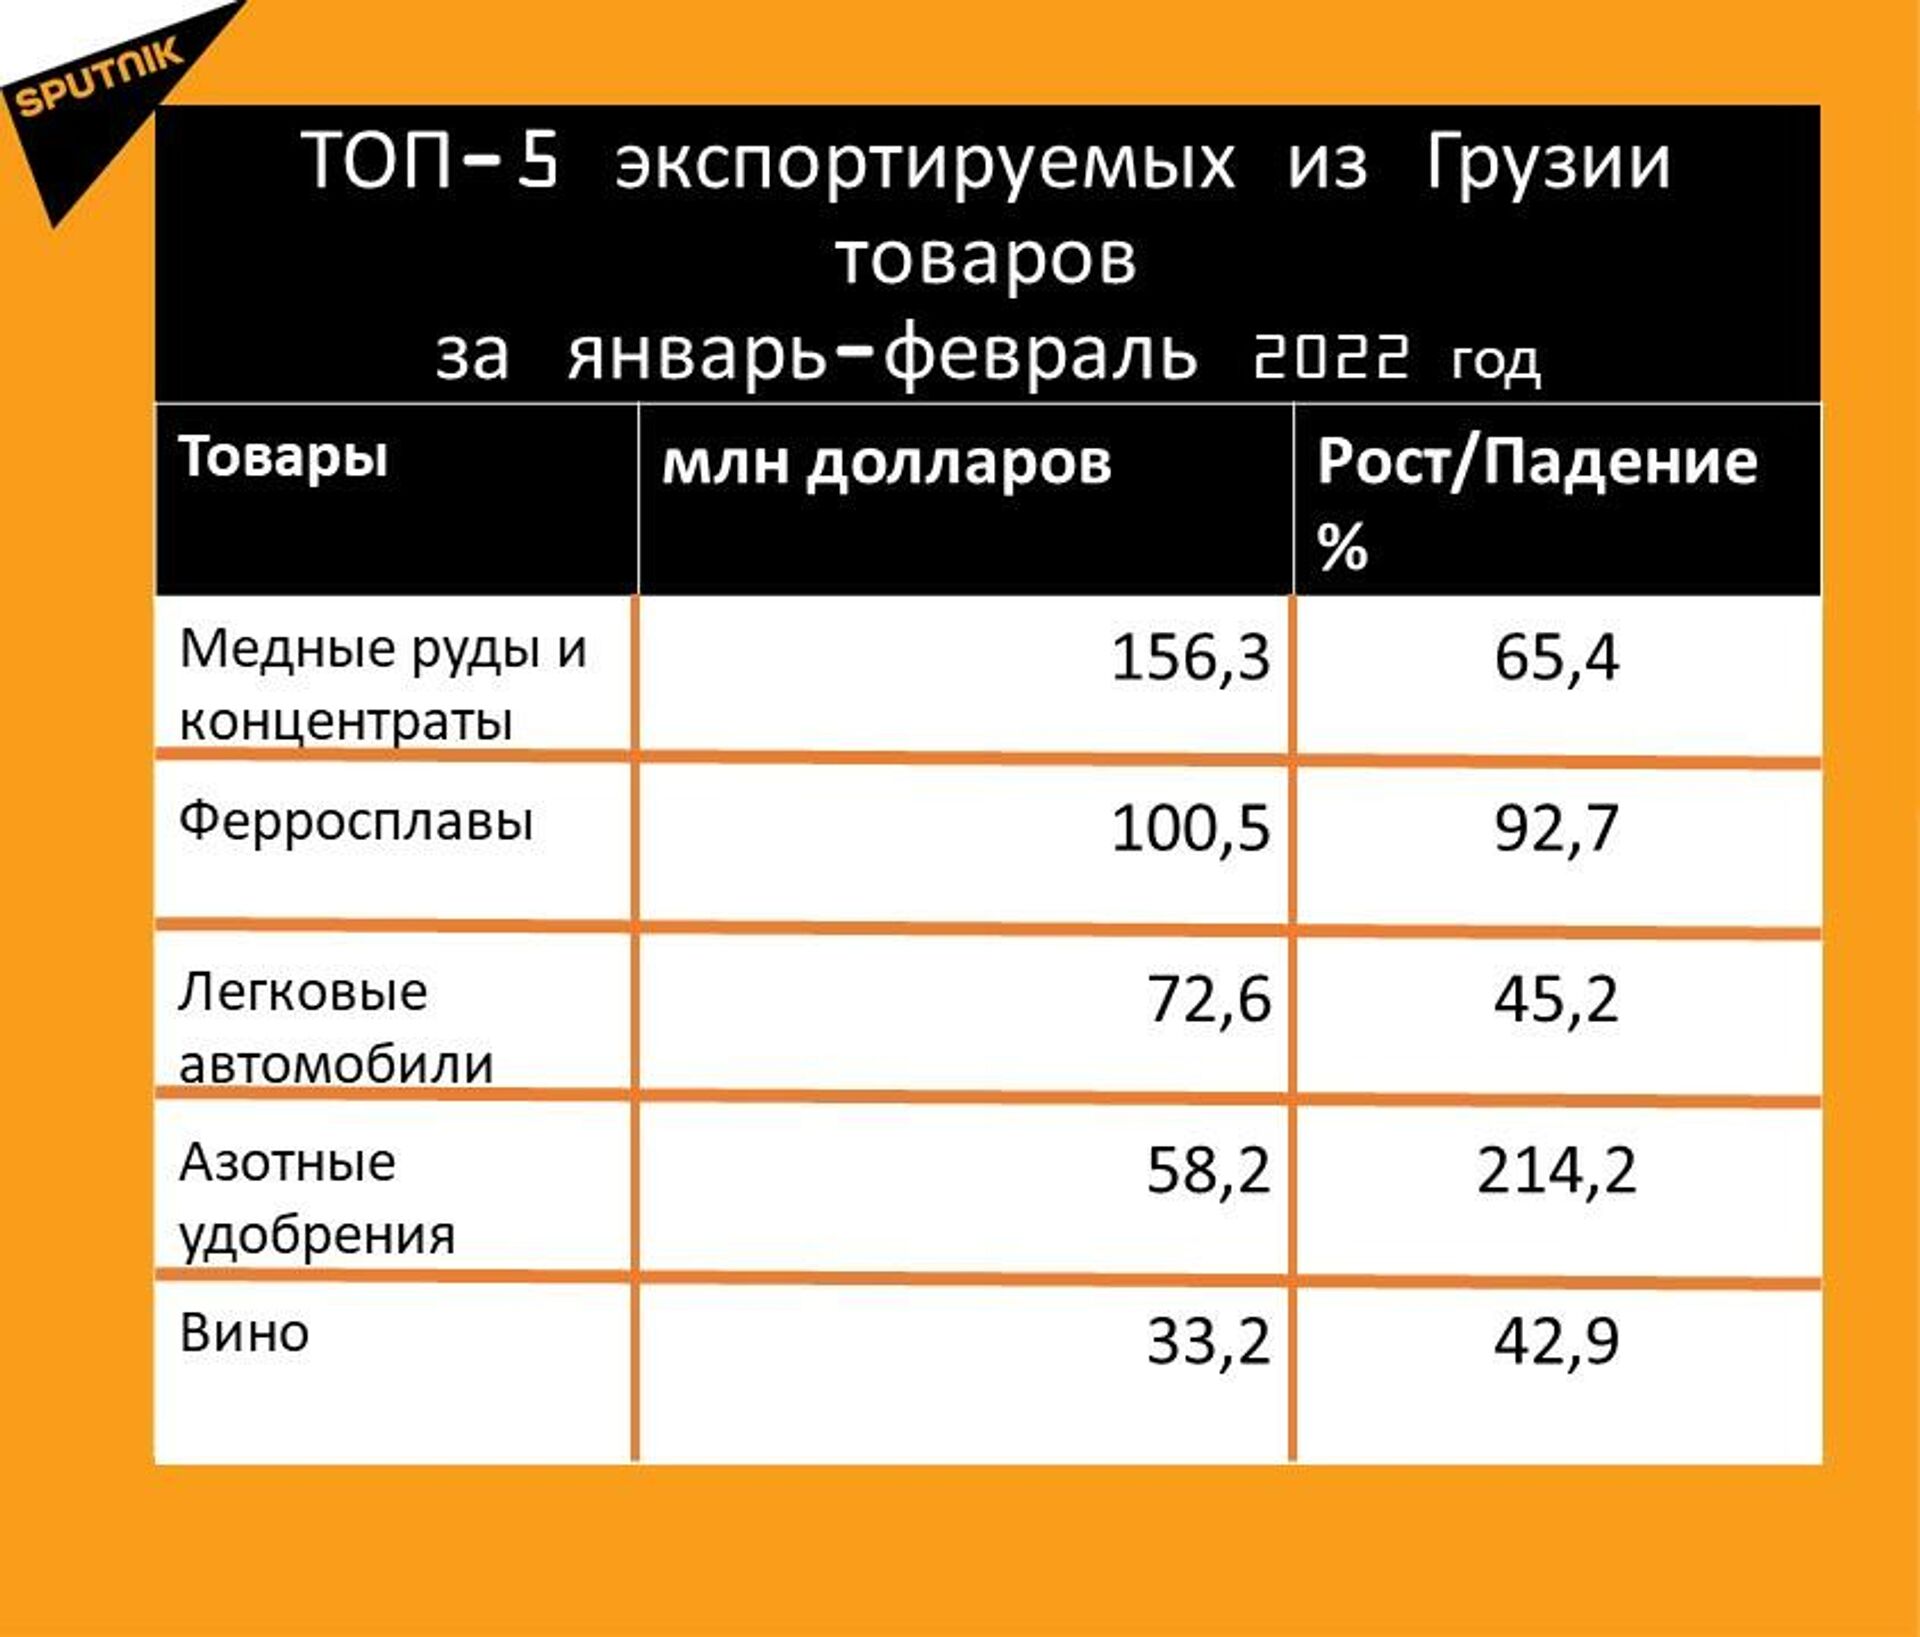 Статистика внешнеторгового оборота Грузии за январь-февраль 2022 года, экспорт - Sputnik Грузия, 1920, 22.03.2022